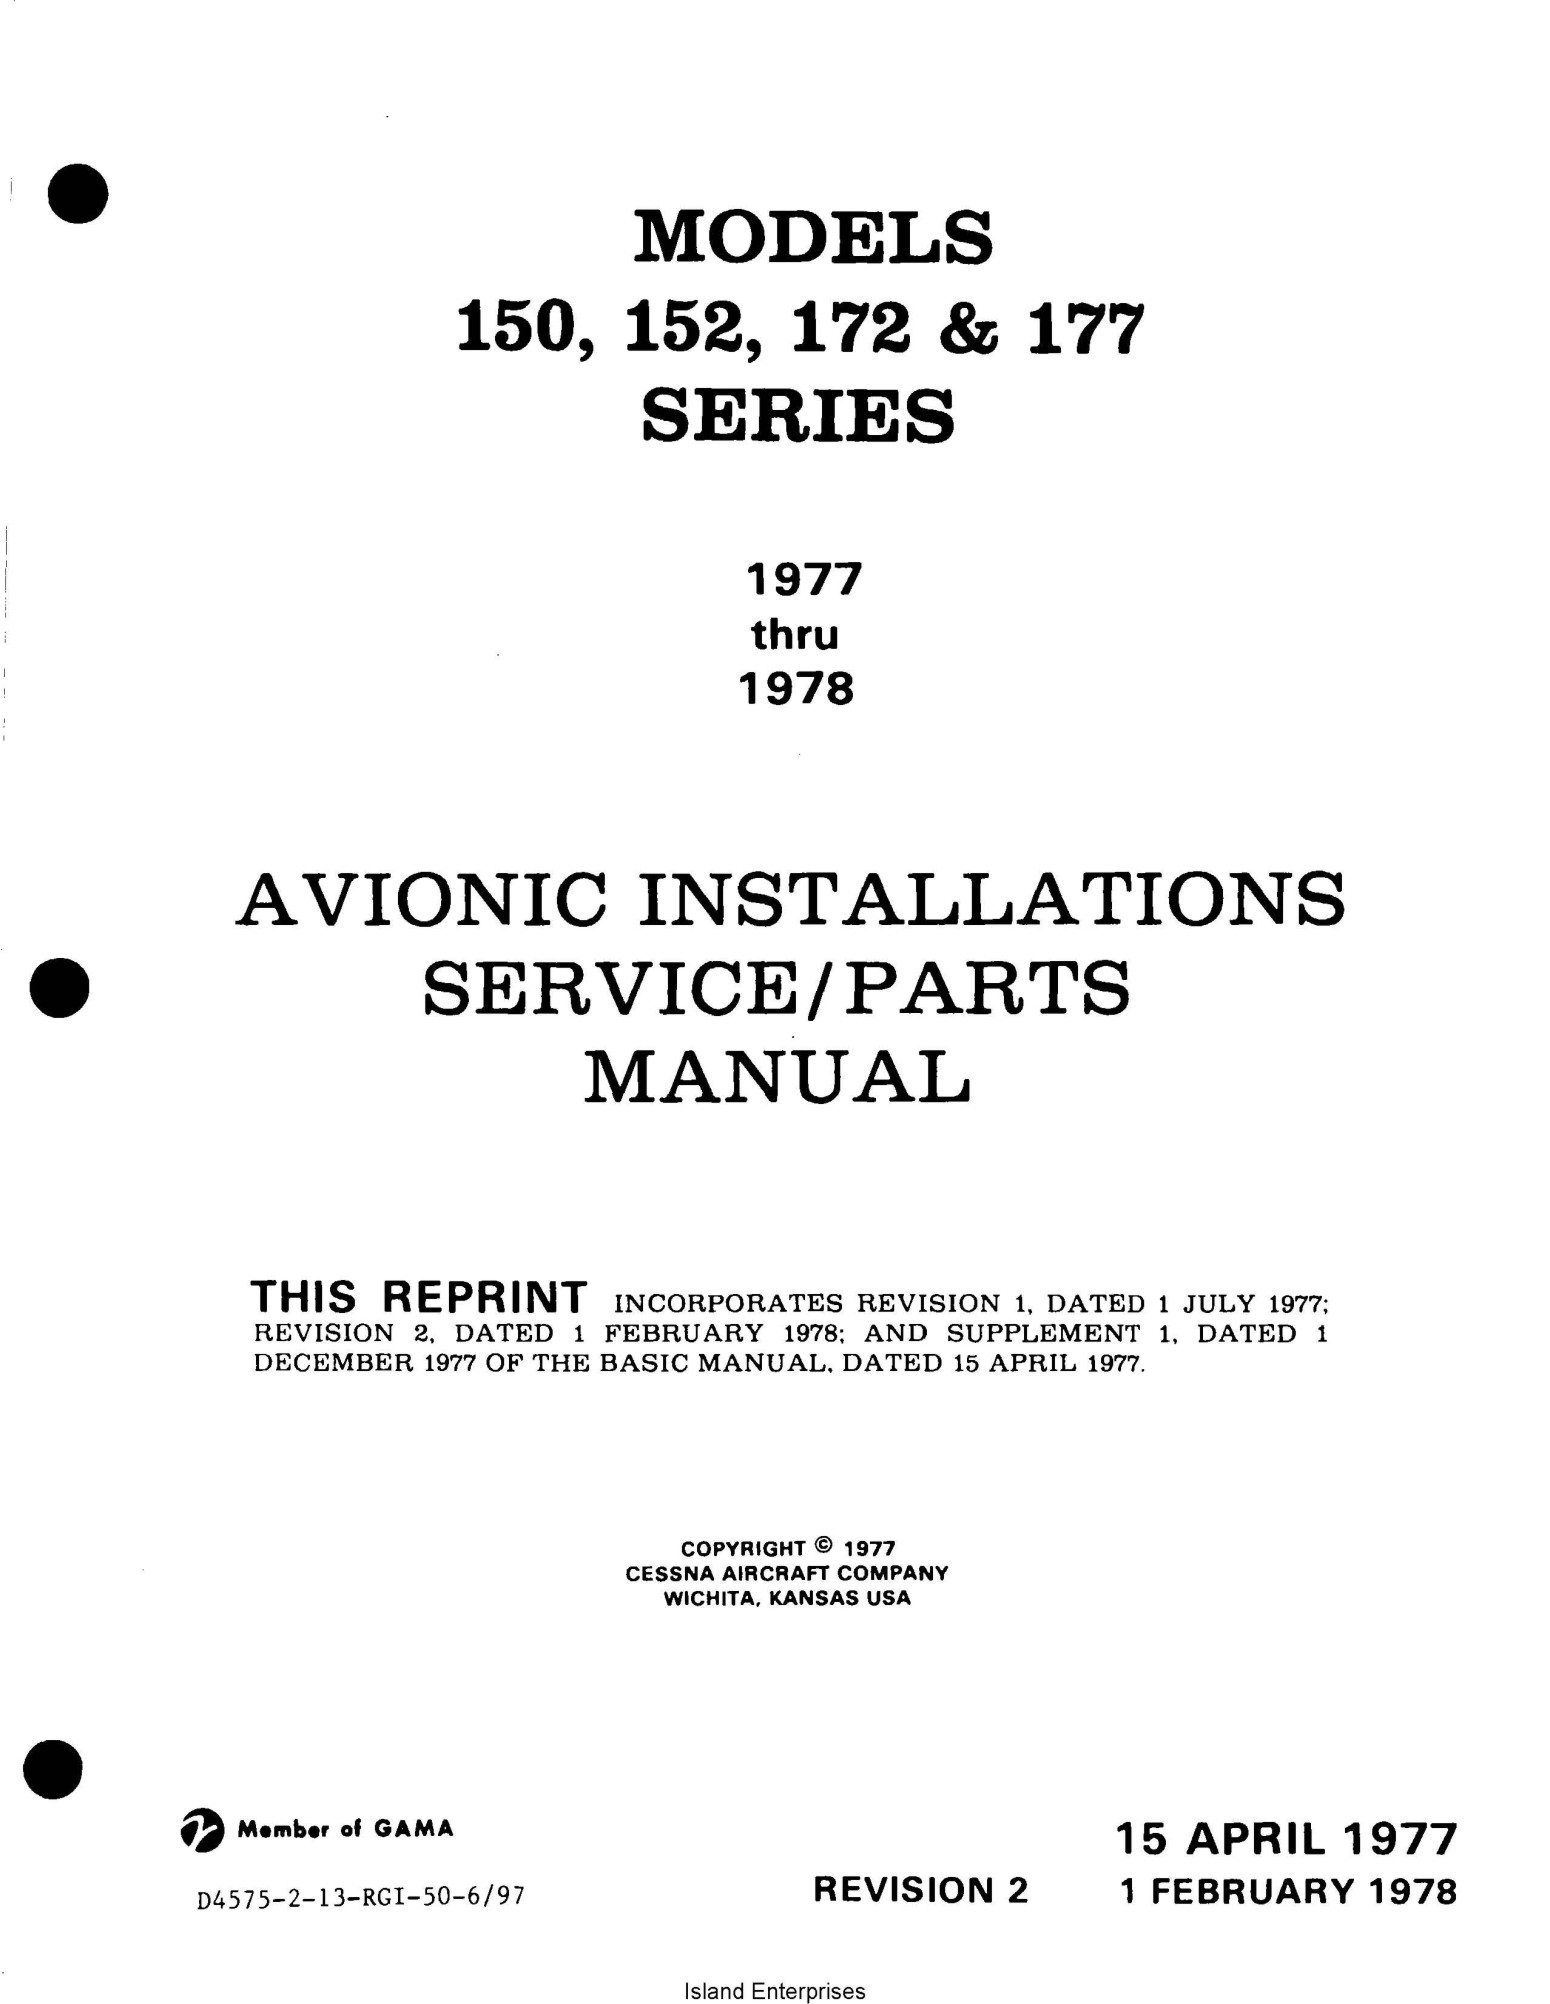 Cessna Models 150,152, 172, 177 Service & Parts Manual D4575-2-13